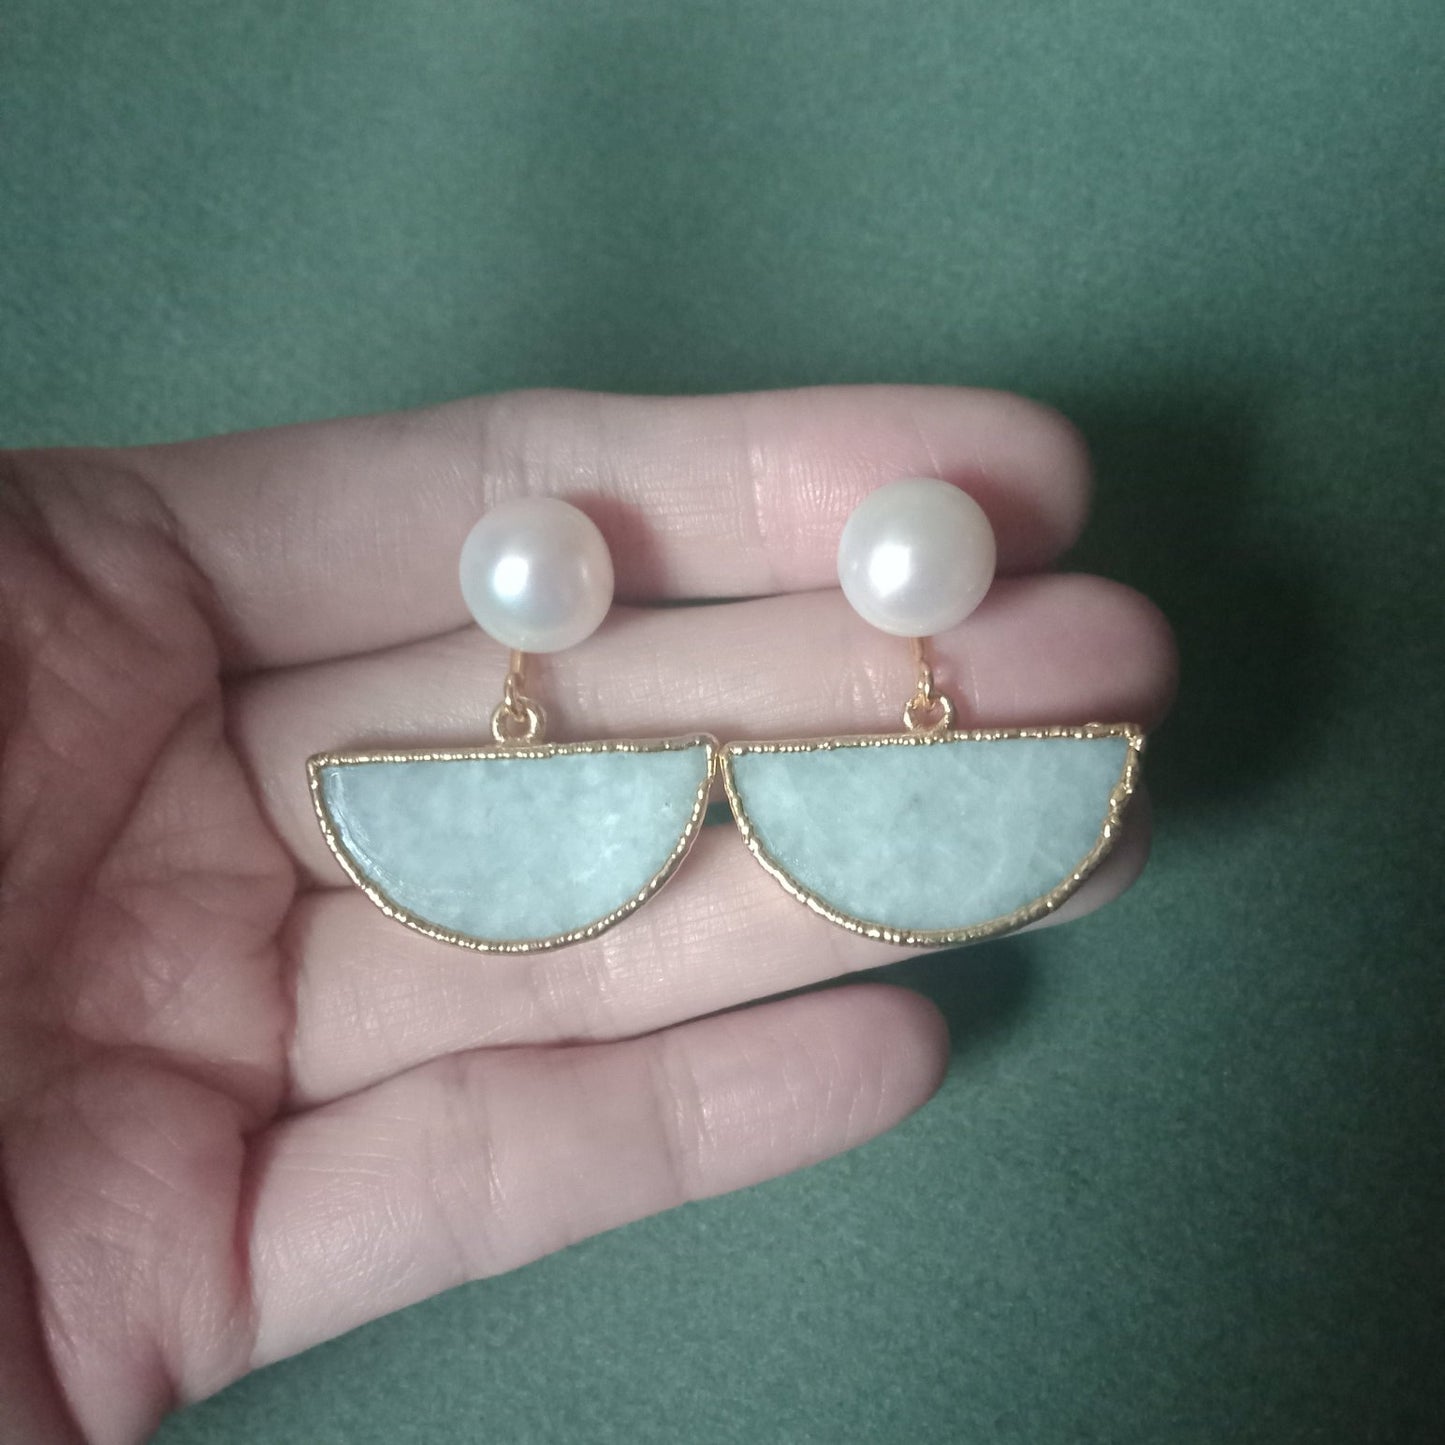 Jade half moon earrings with FW pearls